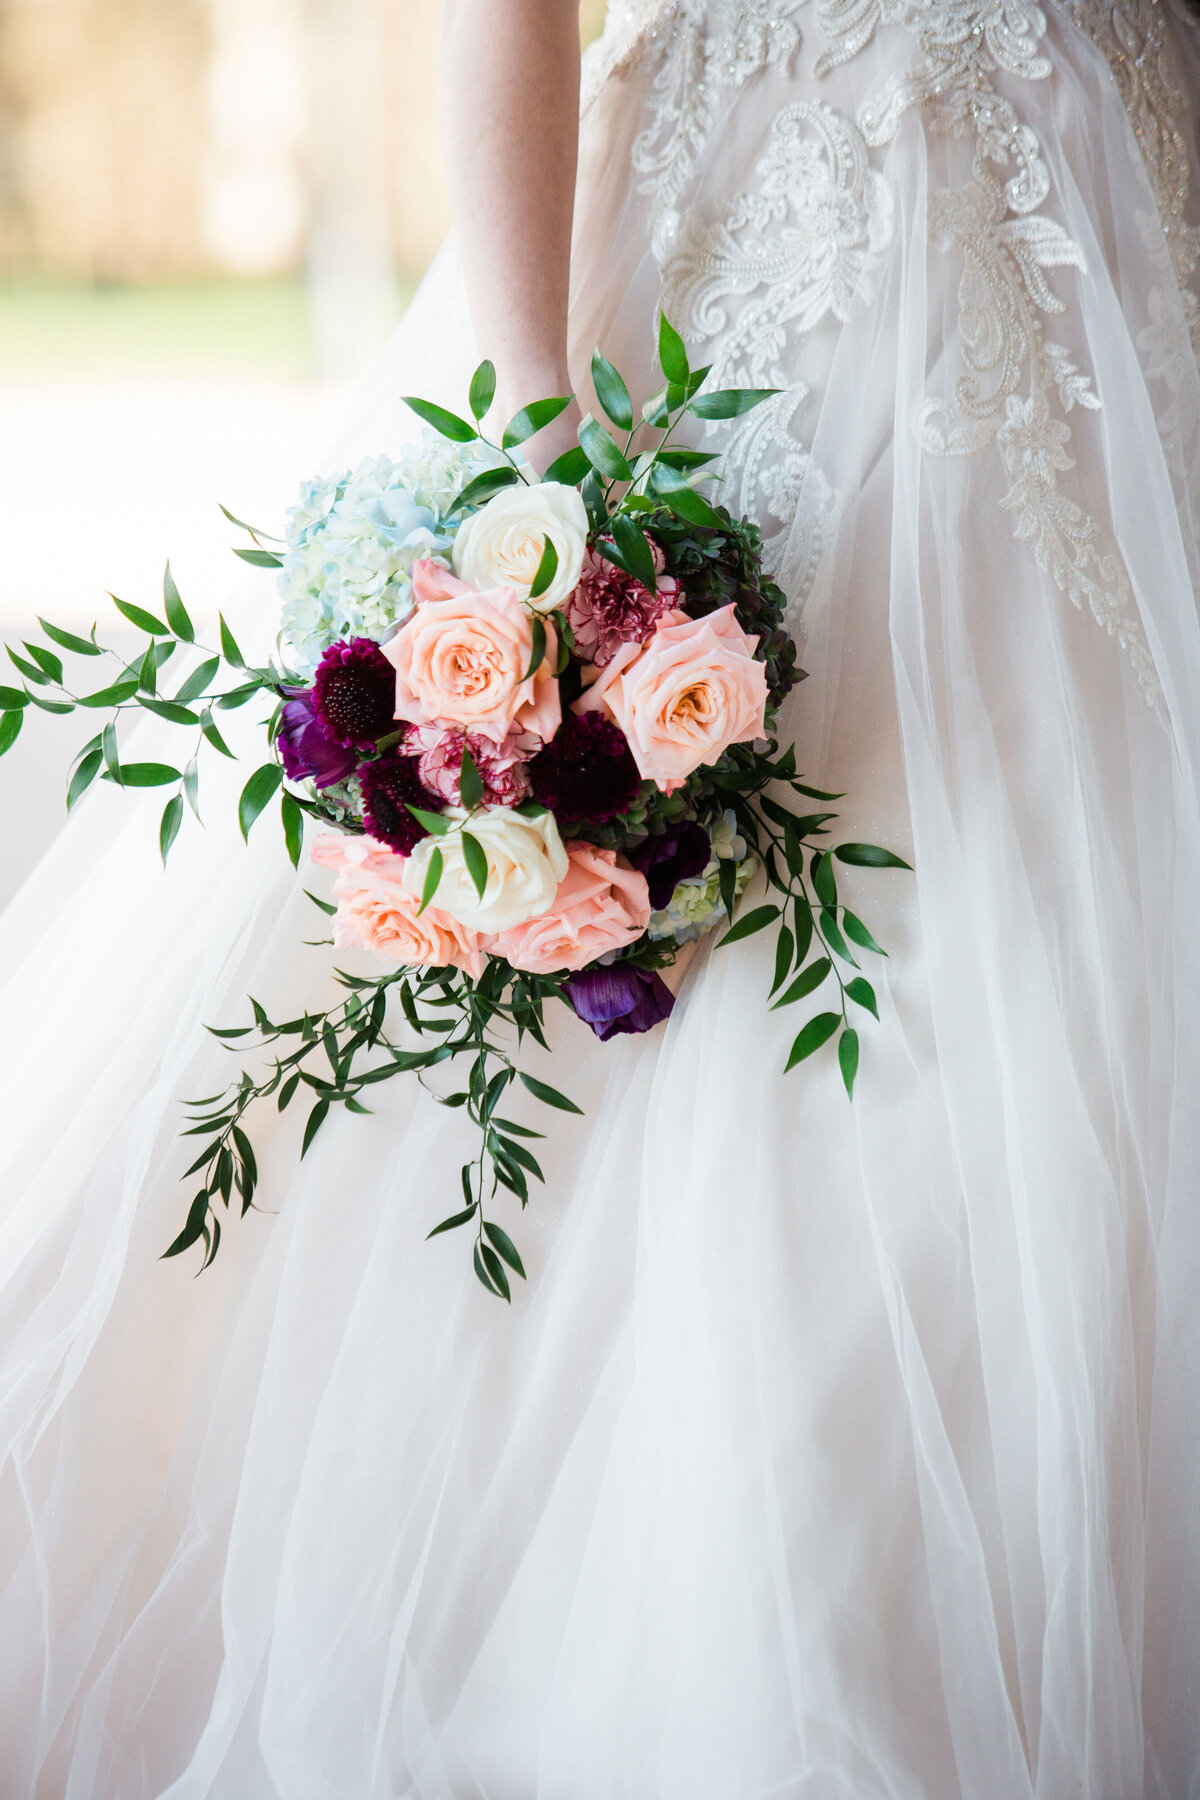 close up of bride bouquet at wedding venue